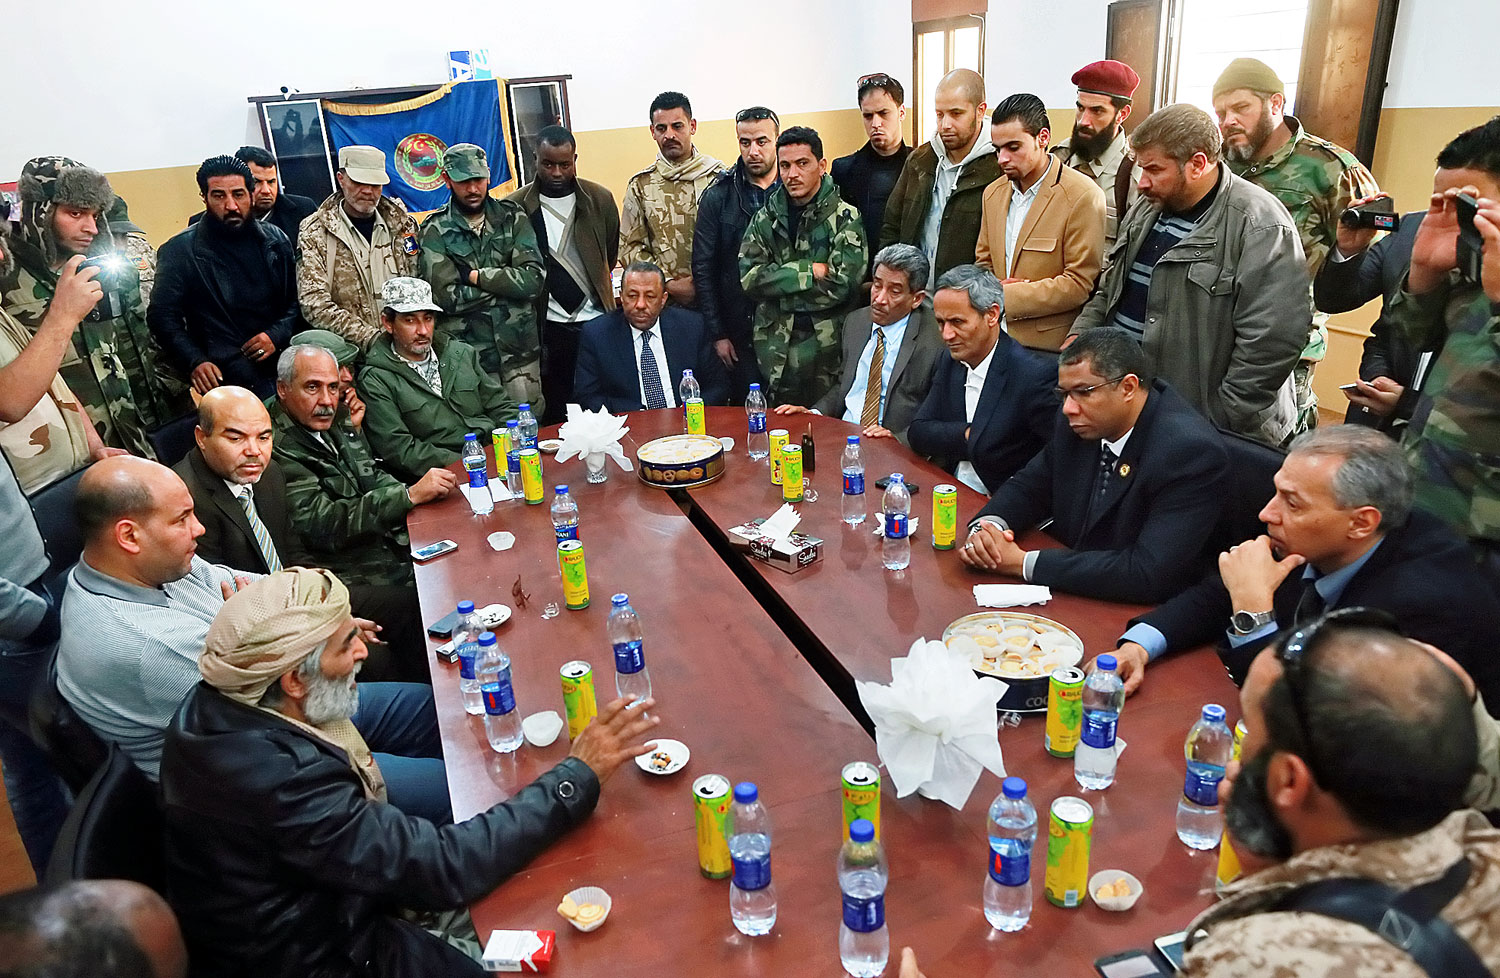 Líbia nemzetközileg elismert kormányfője, Abdullah al-Tinni (középen) minisztereivel és katonai vezetőkkel tanácskozik Bengáziban